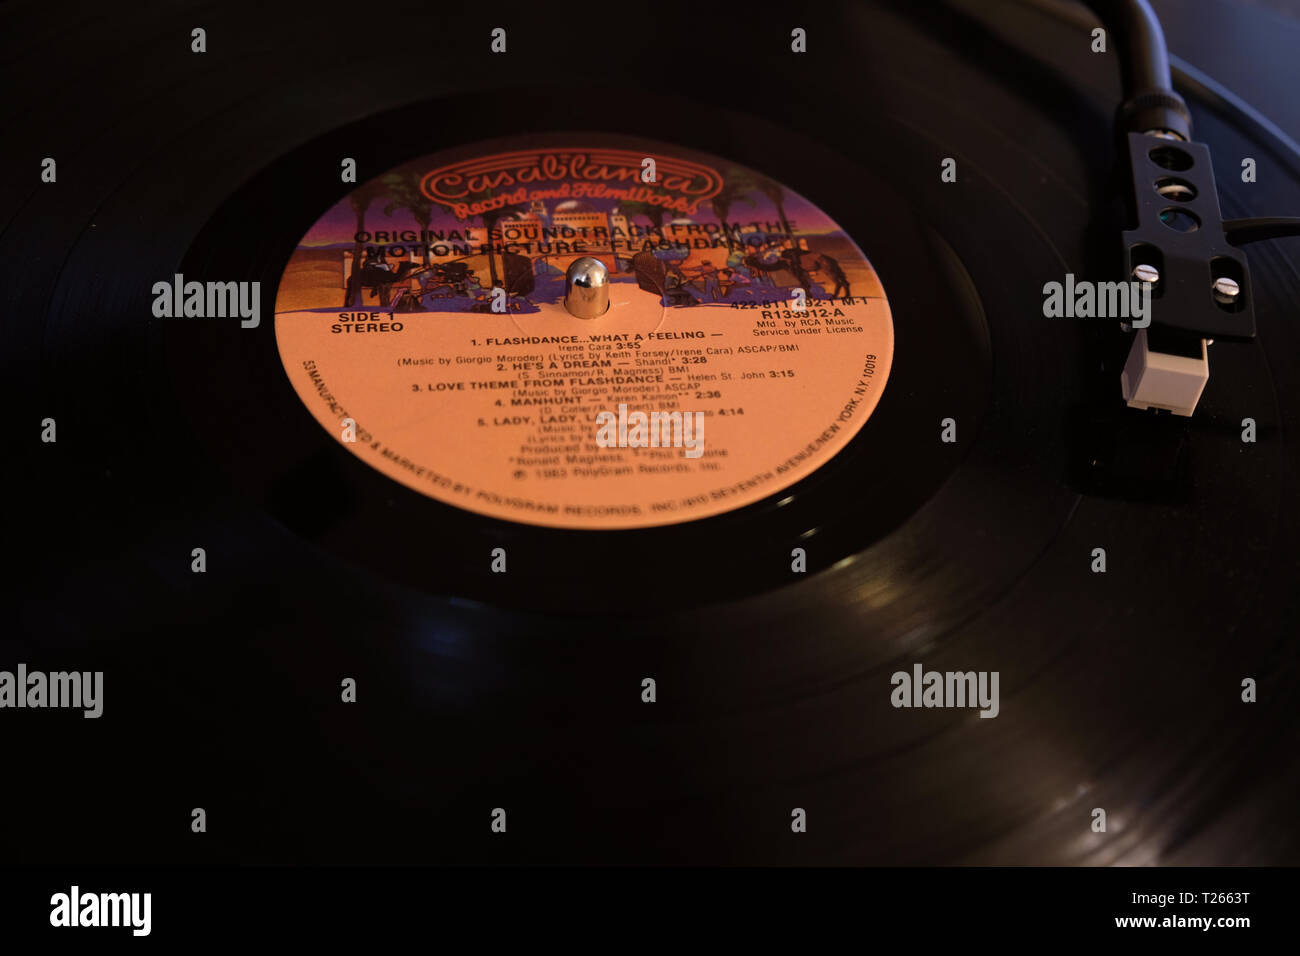 Close-up Original Motion Picture Soundtrack von dem Film Flashdance; Flashdance - What a Feeling von Irene Cara; Aufzeichnung auf Plattenspieler, Plattenspieler. Stockfoto